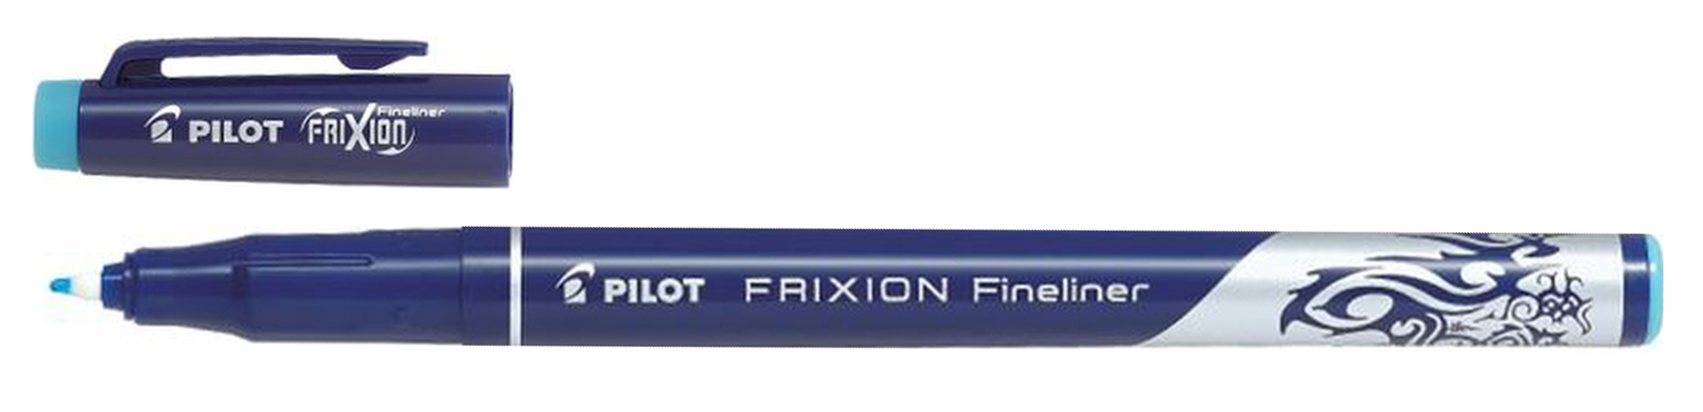 В подарок линер Pilot FriXion Fineliner со стирающимися чернилами